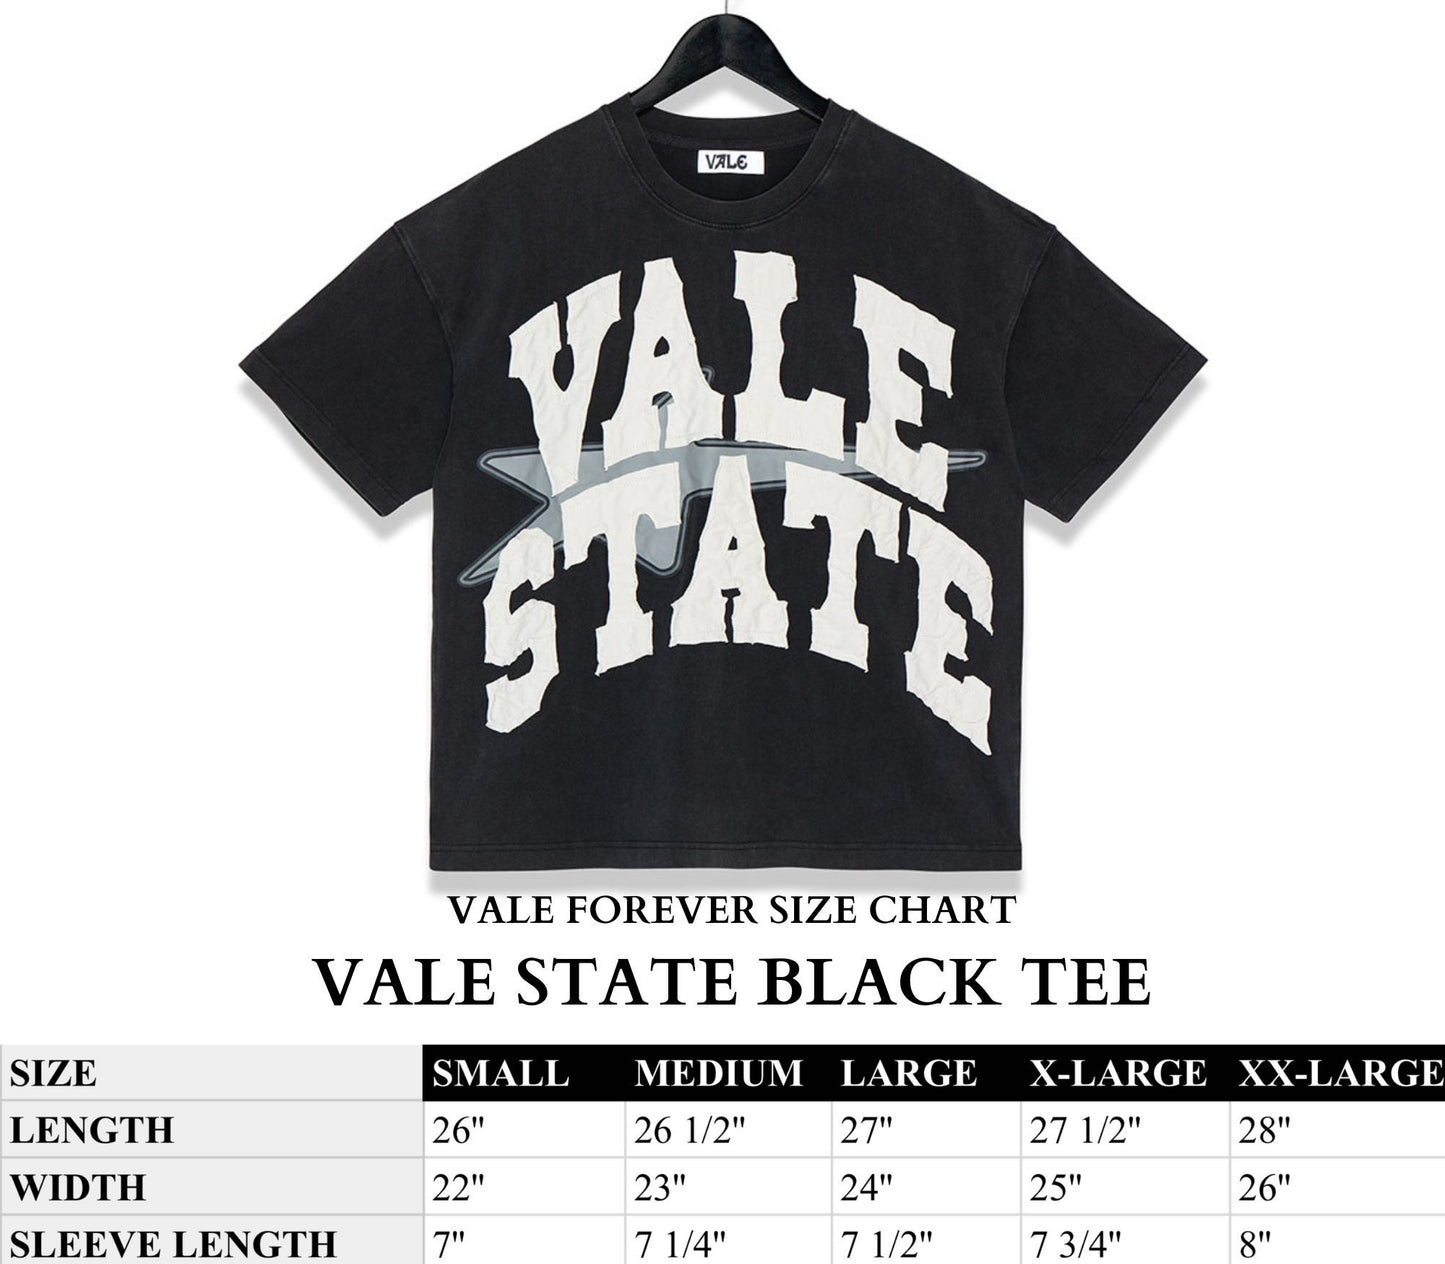 VALE STATE BLACK TEE